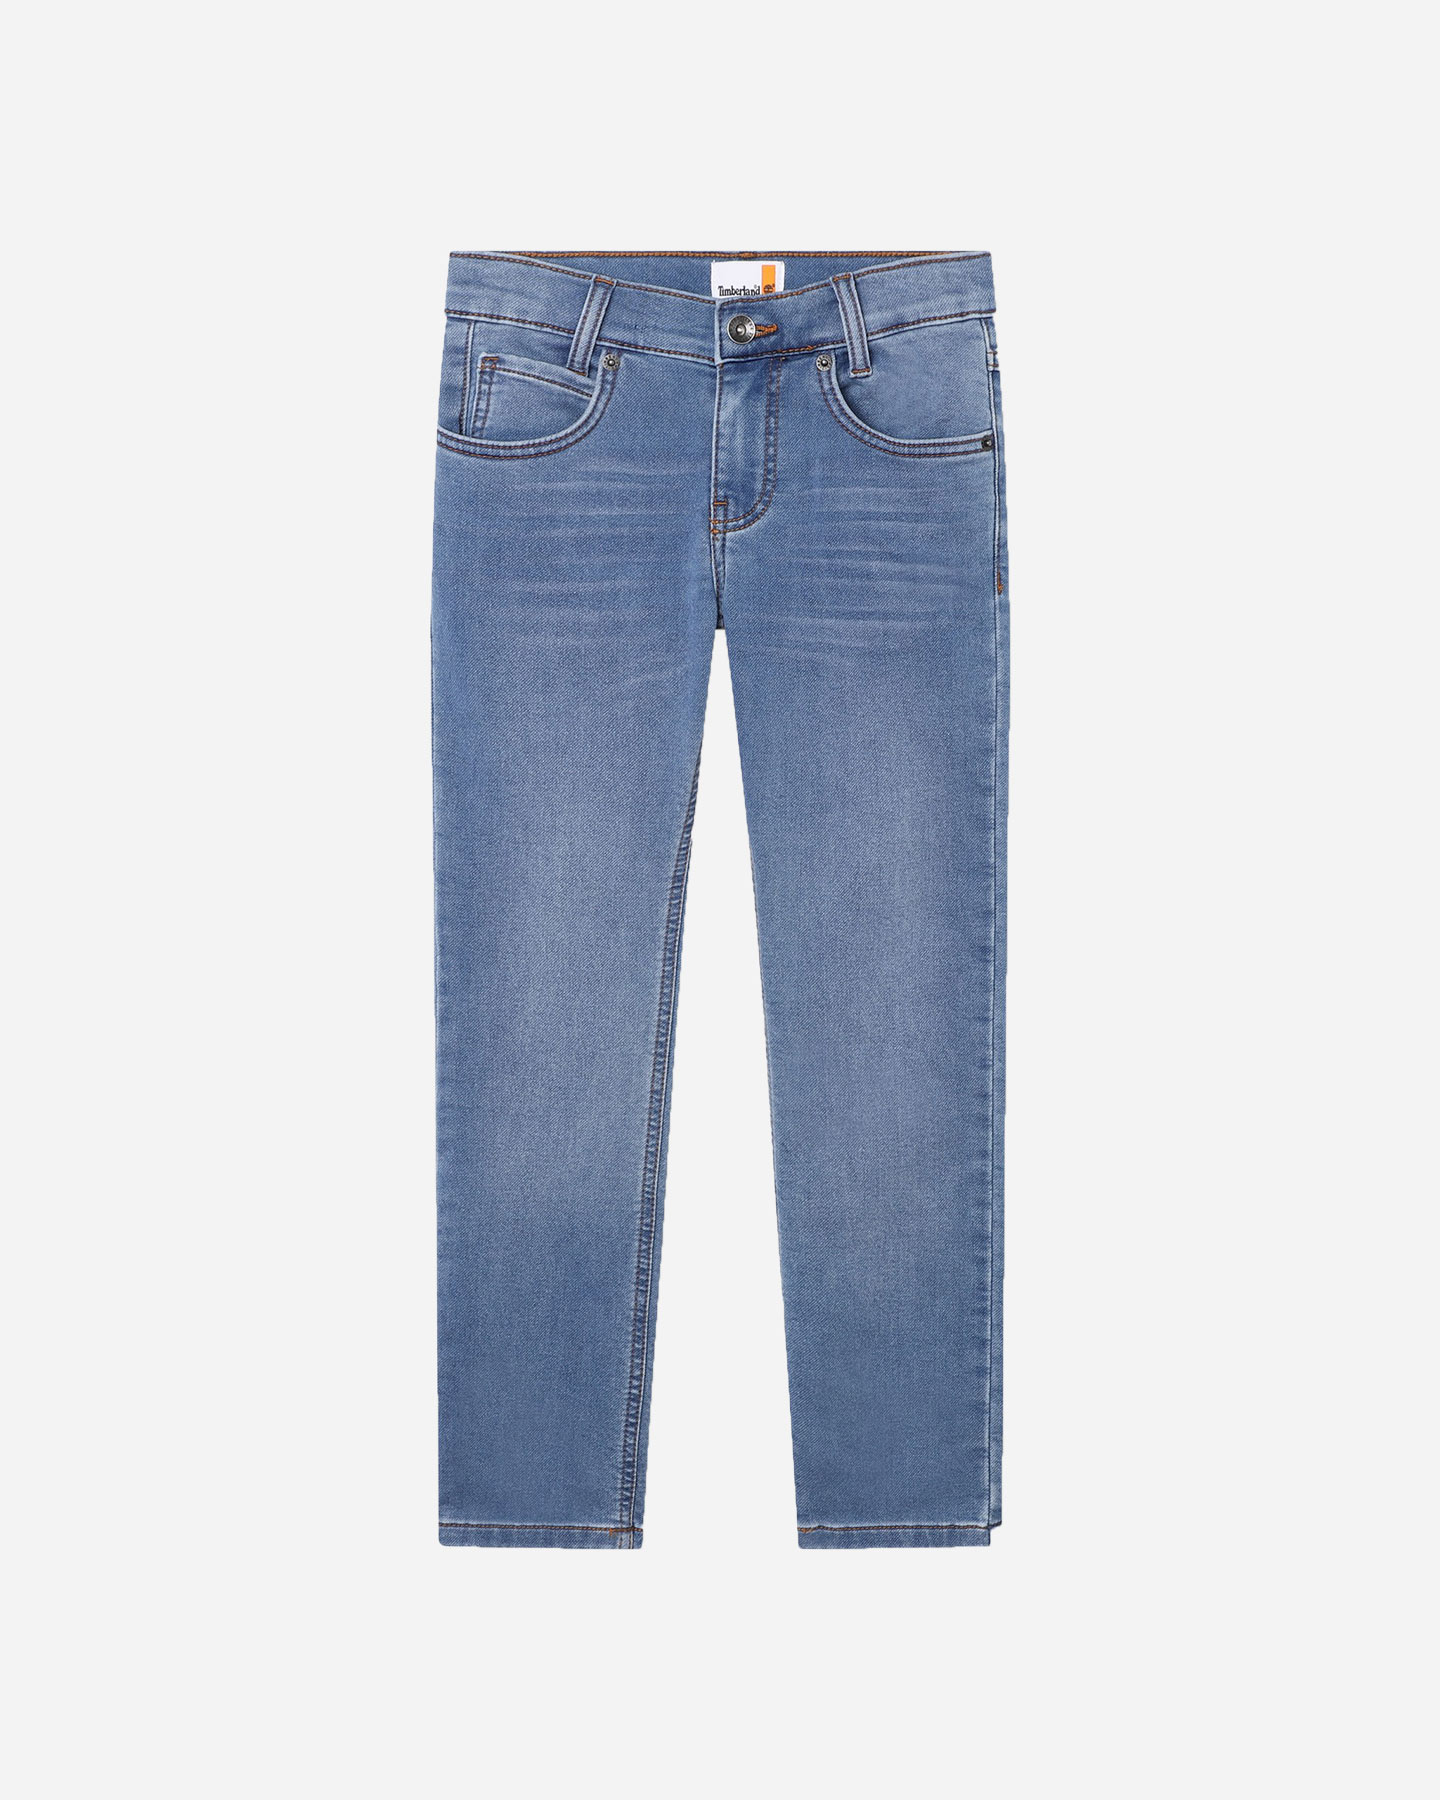 Timberland Denim Bleach Jr - Jeans